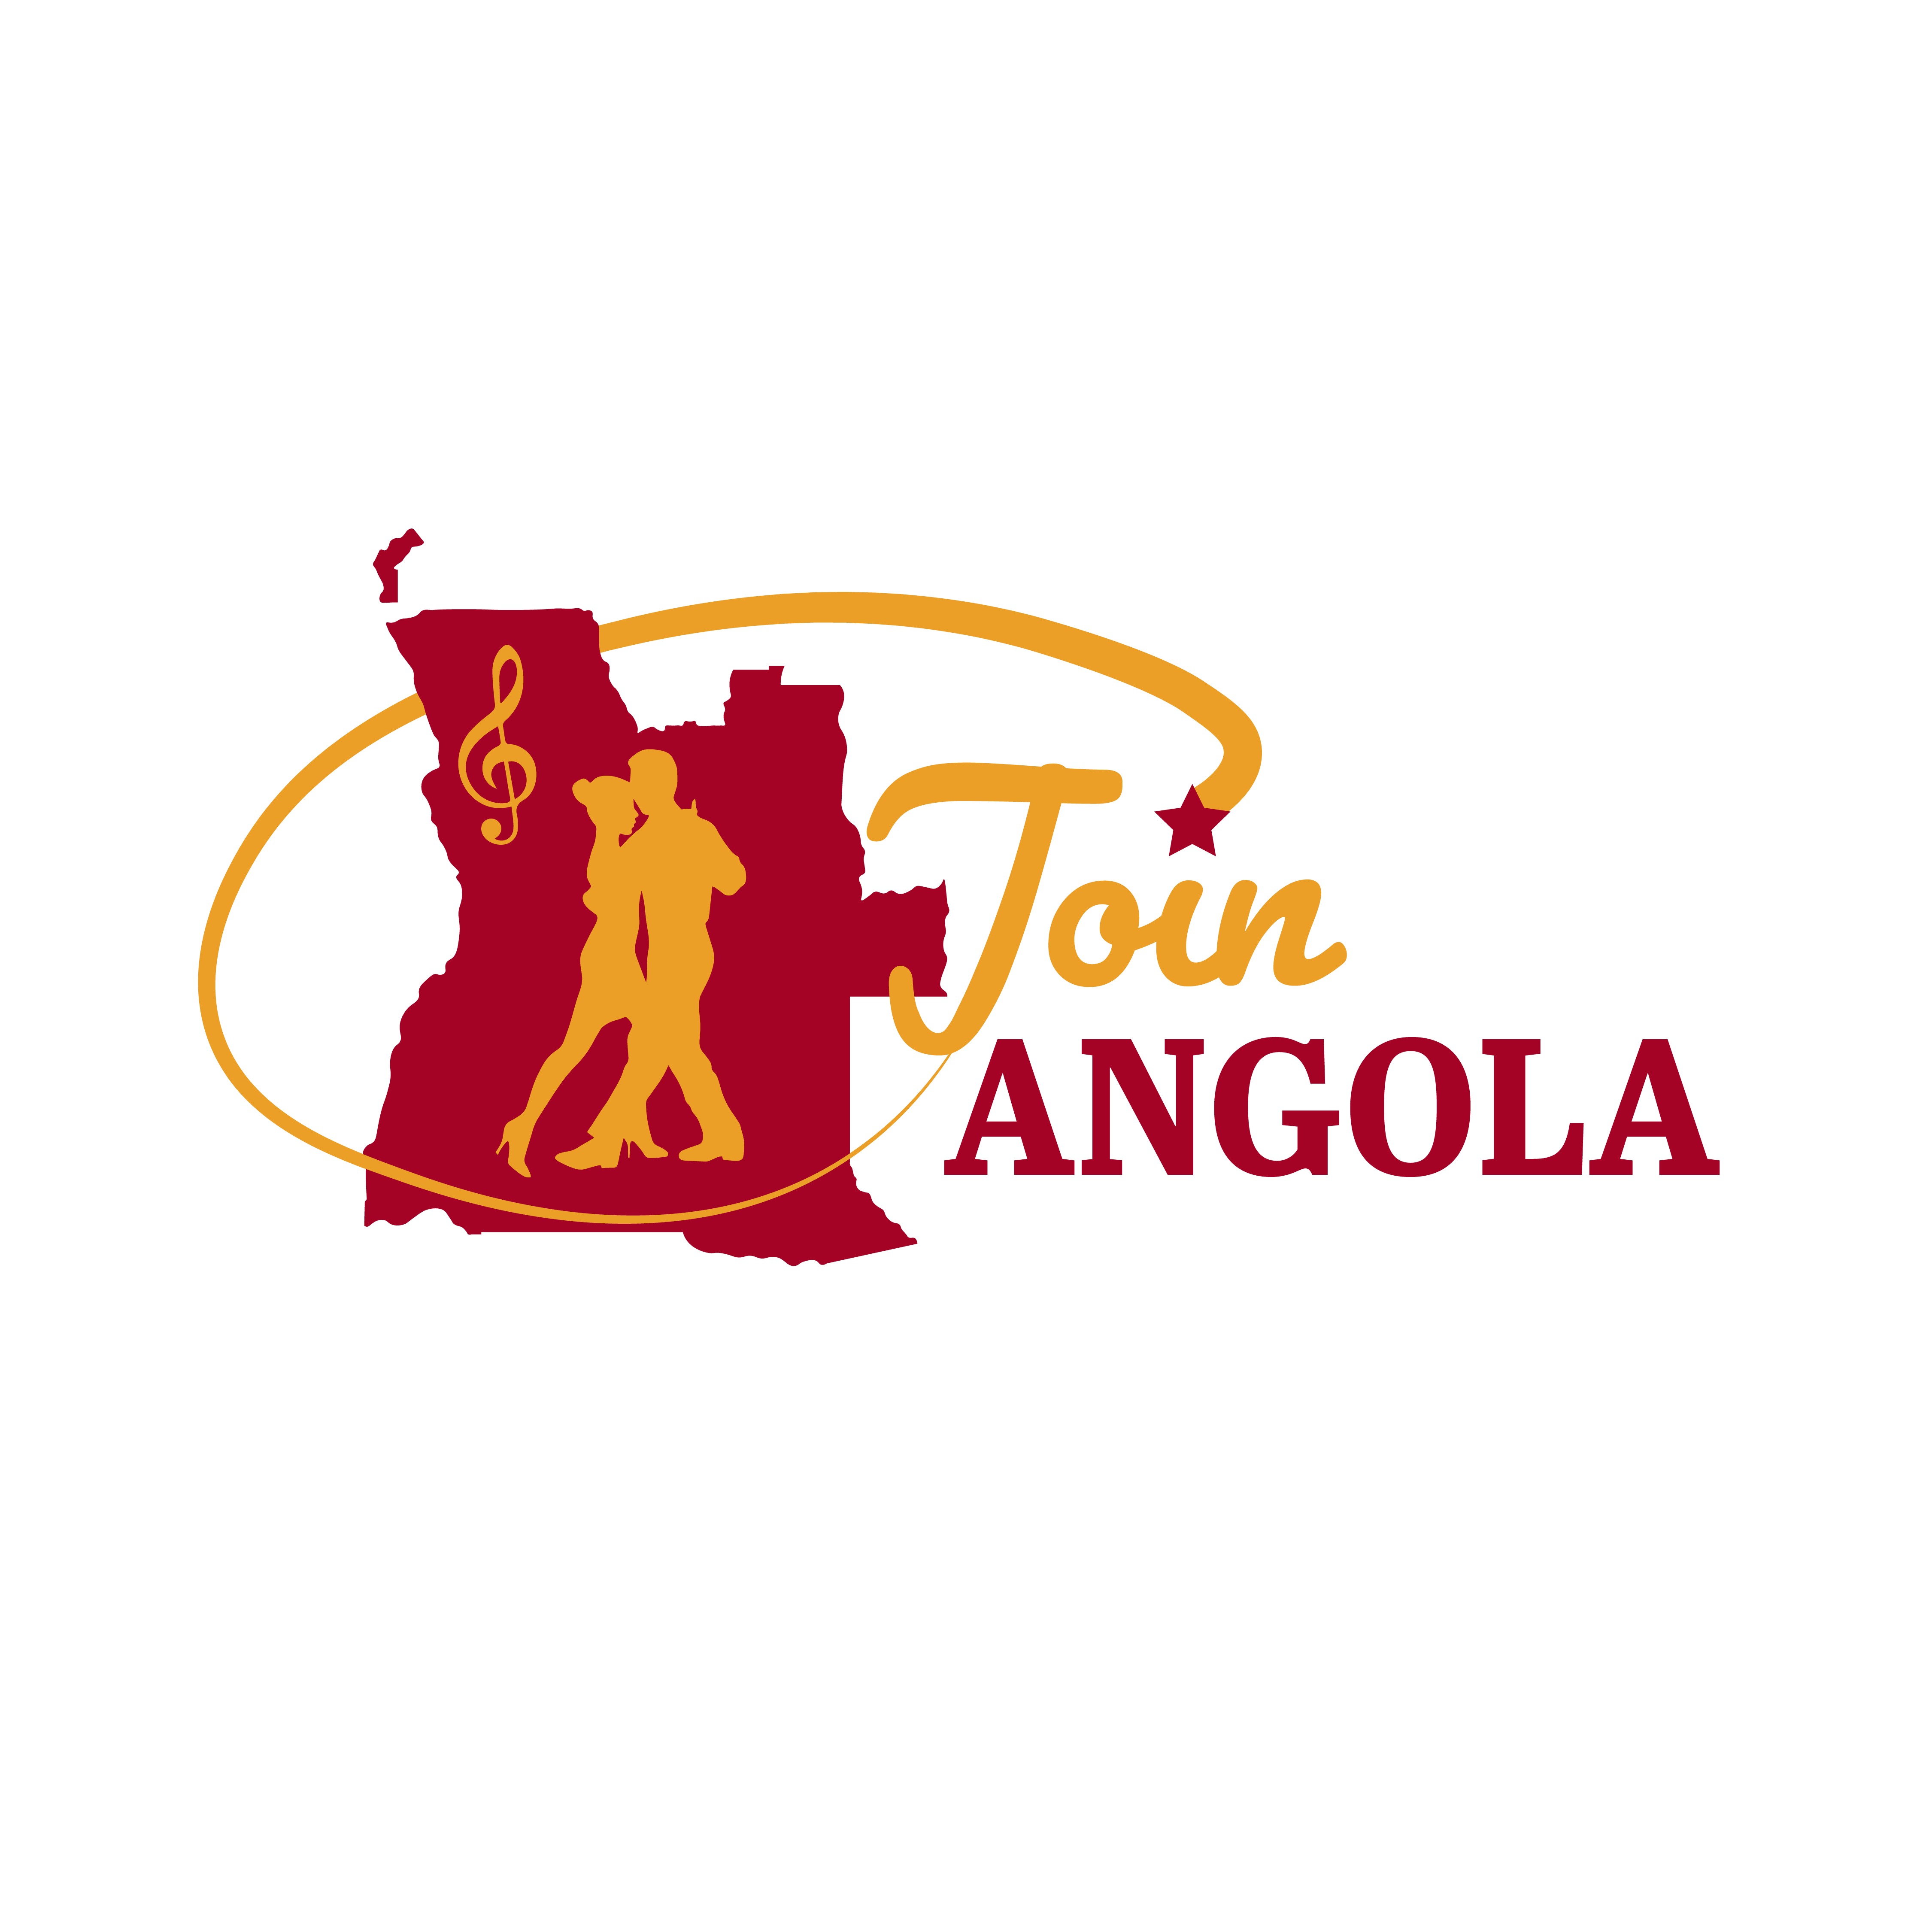 Join Angola